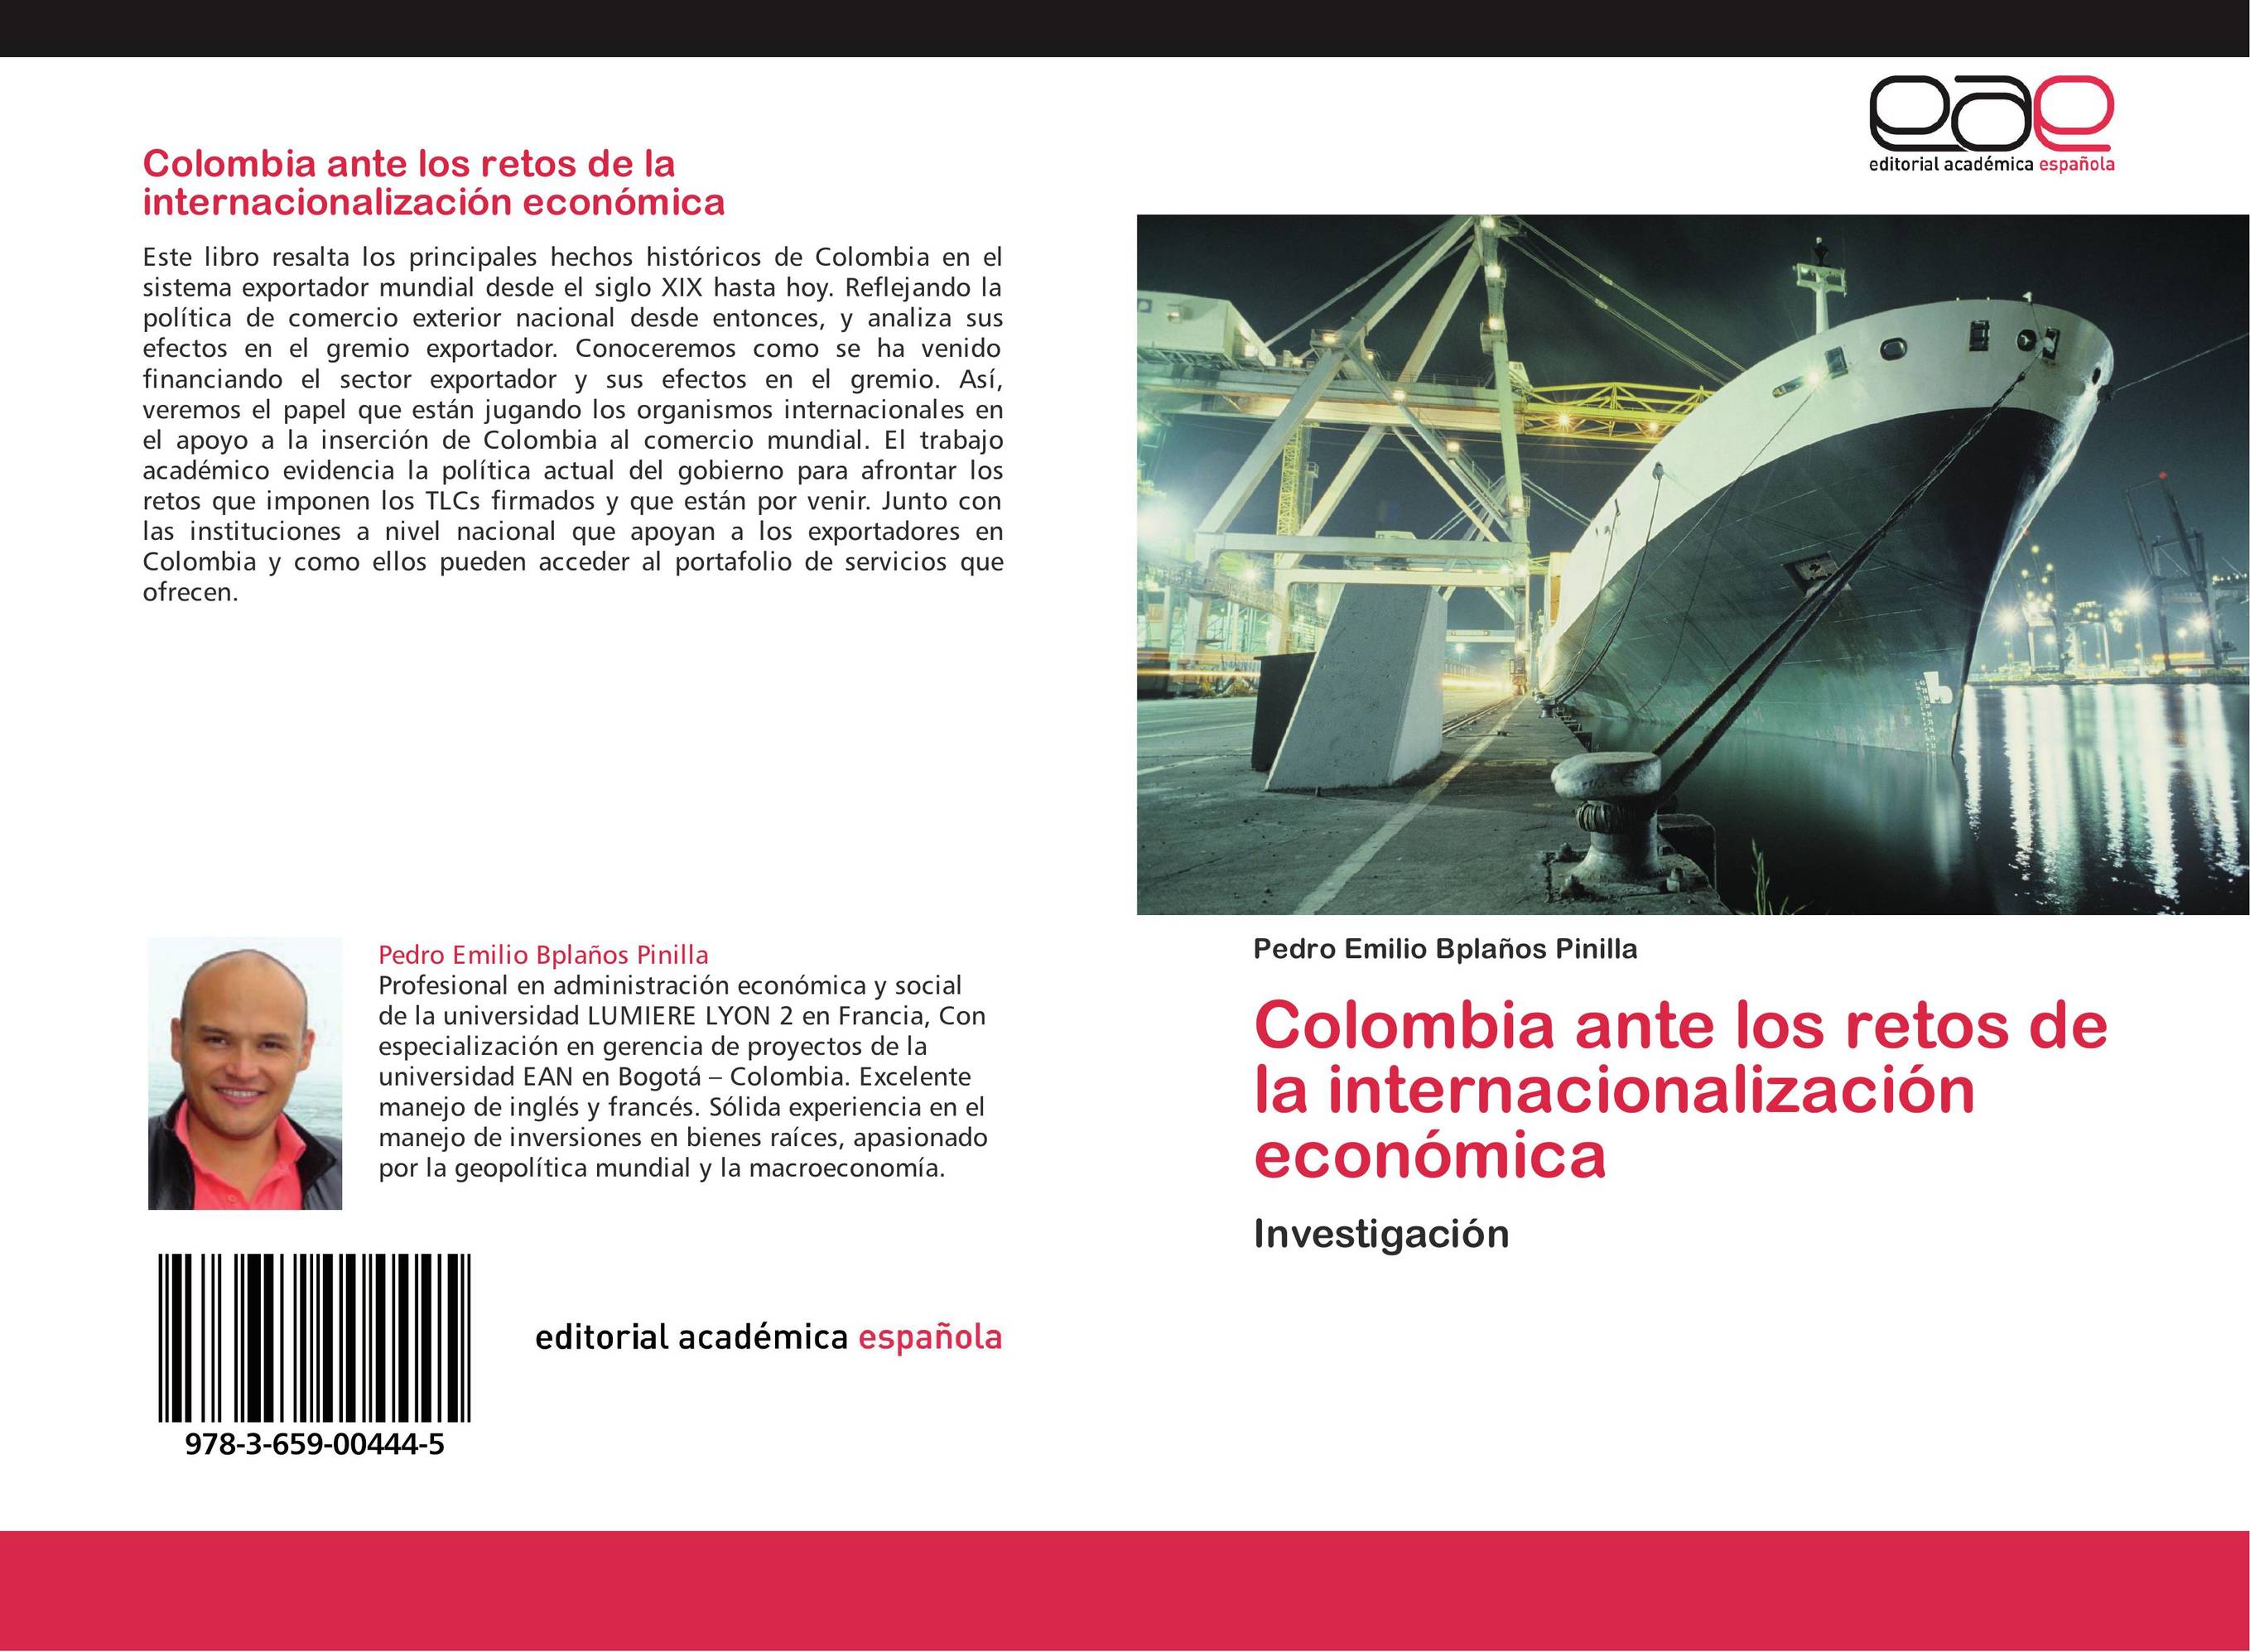 Colombia ante los retos de la internacionalización económica